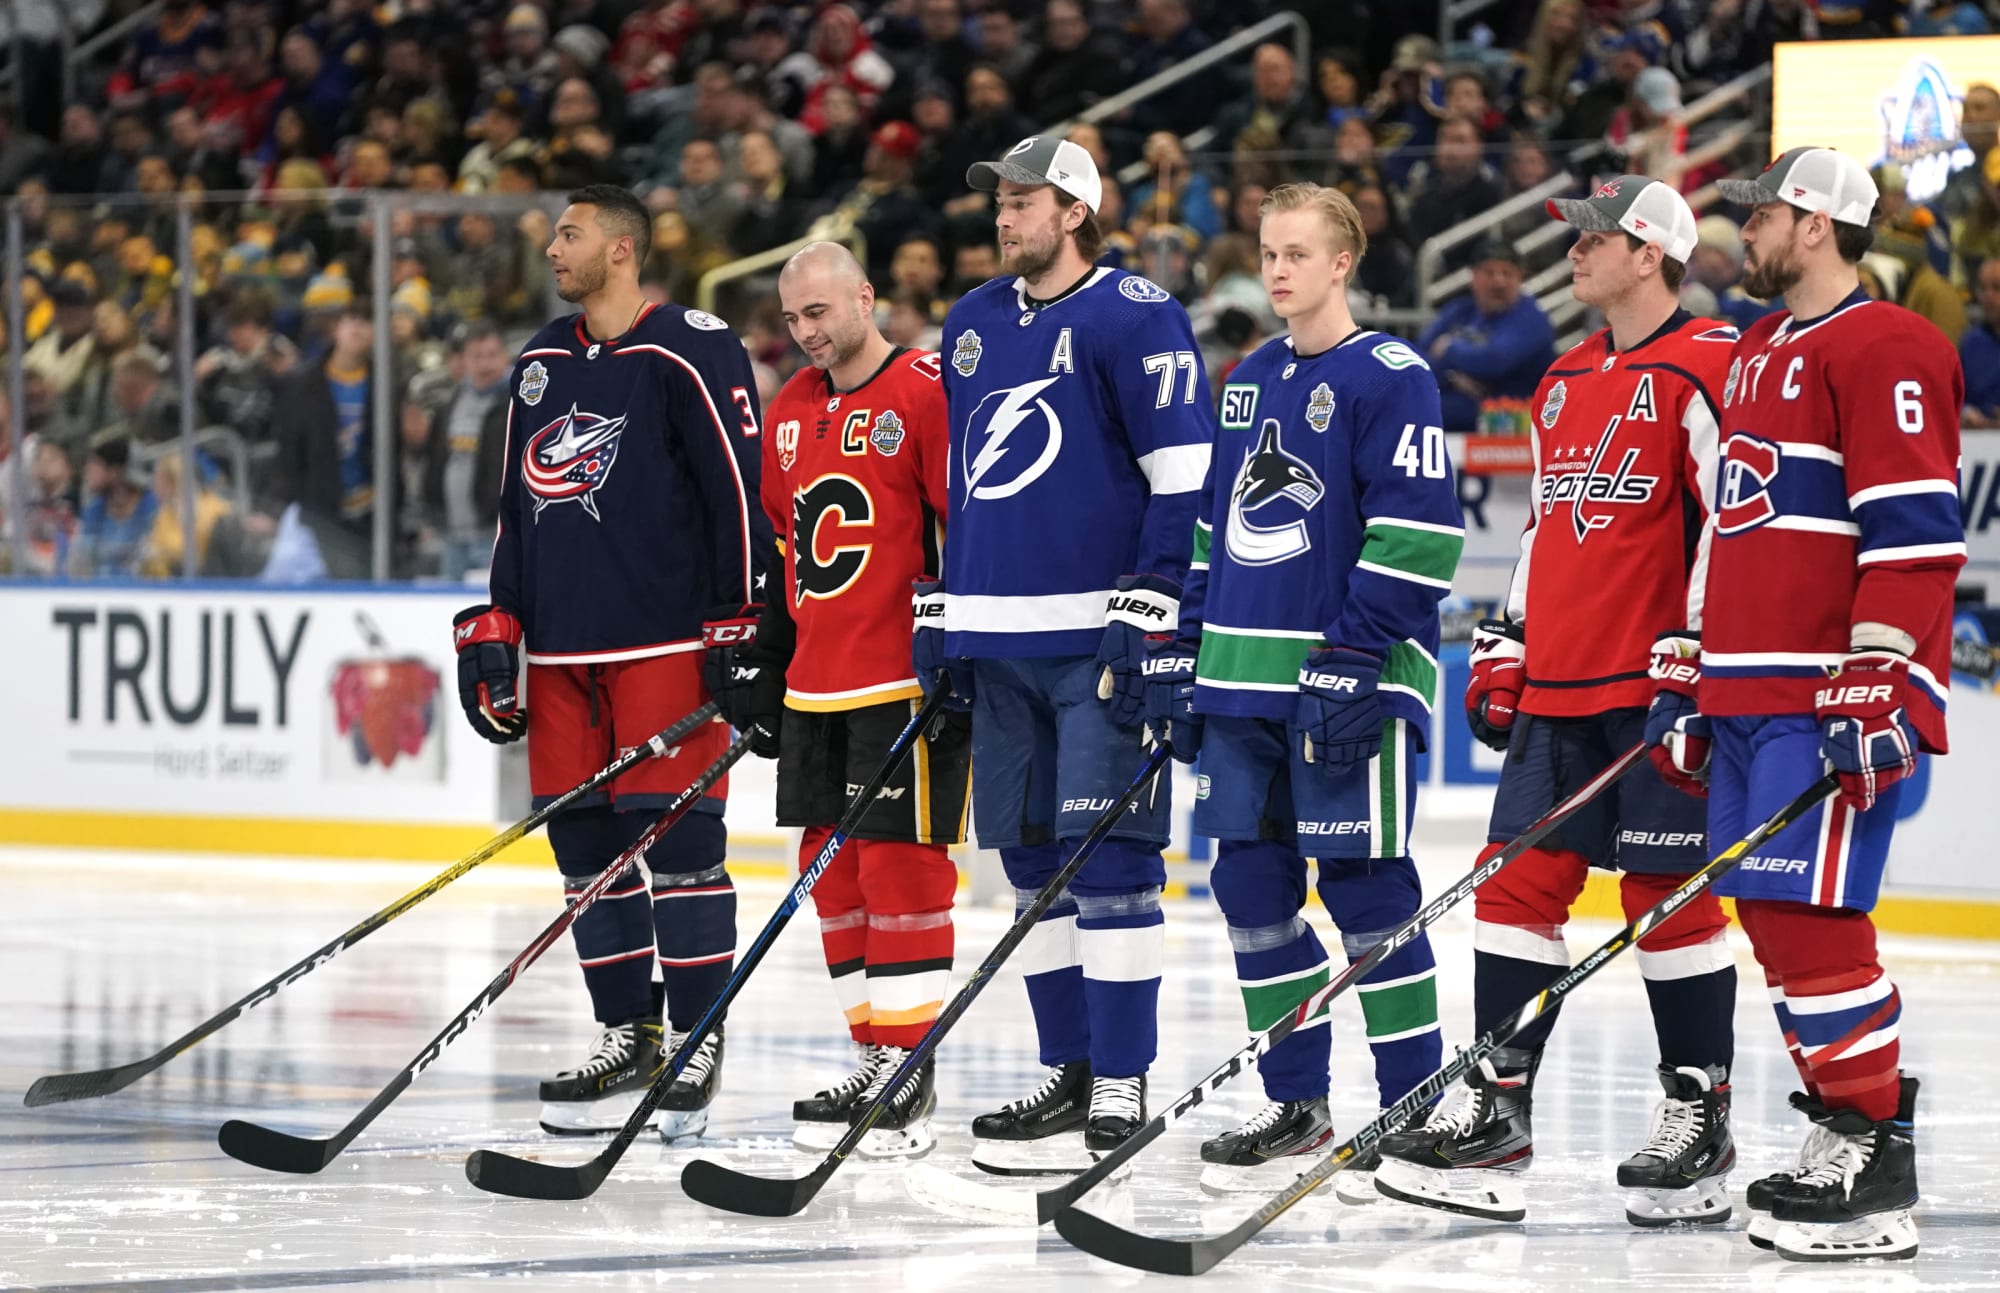 Kris Letang will captain Metropolitan Division at NHL All-Star Game